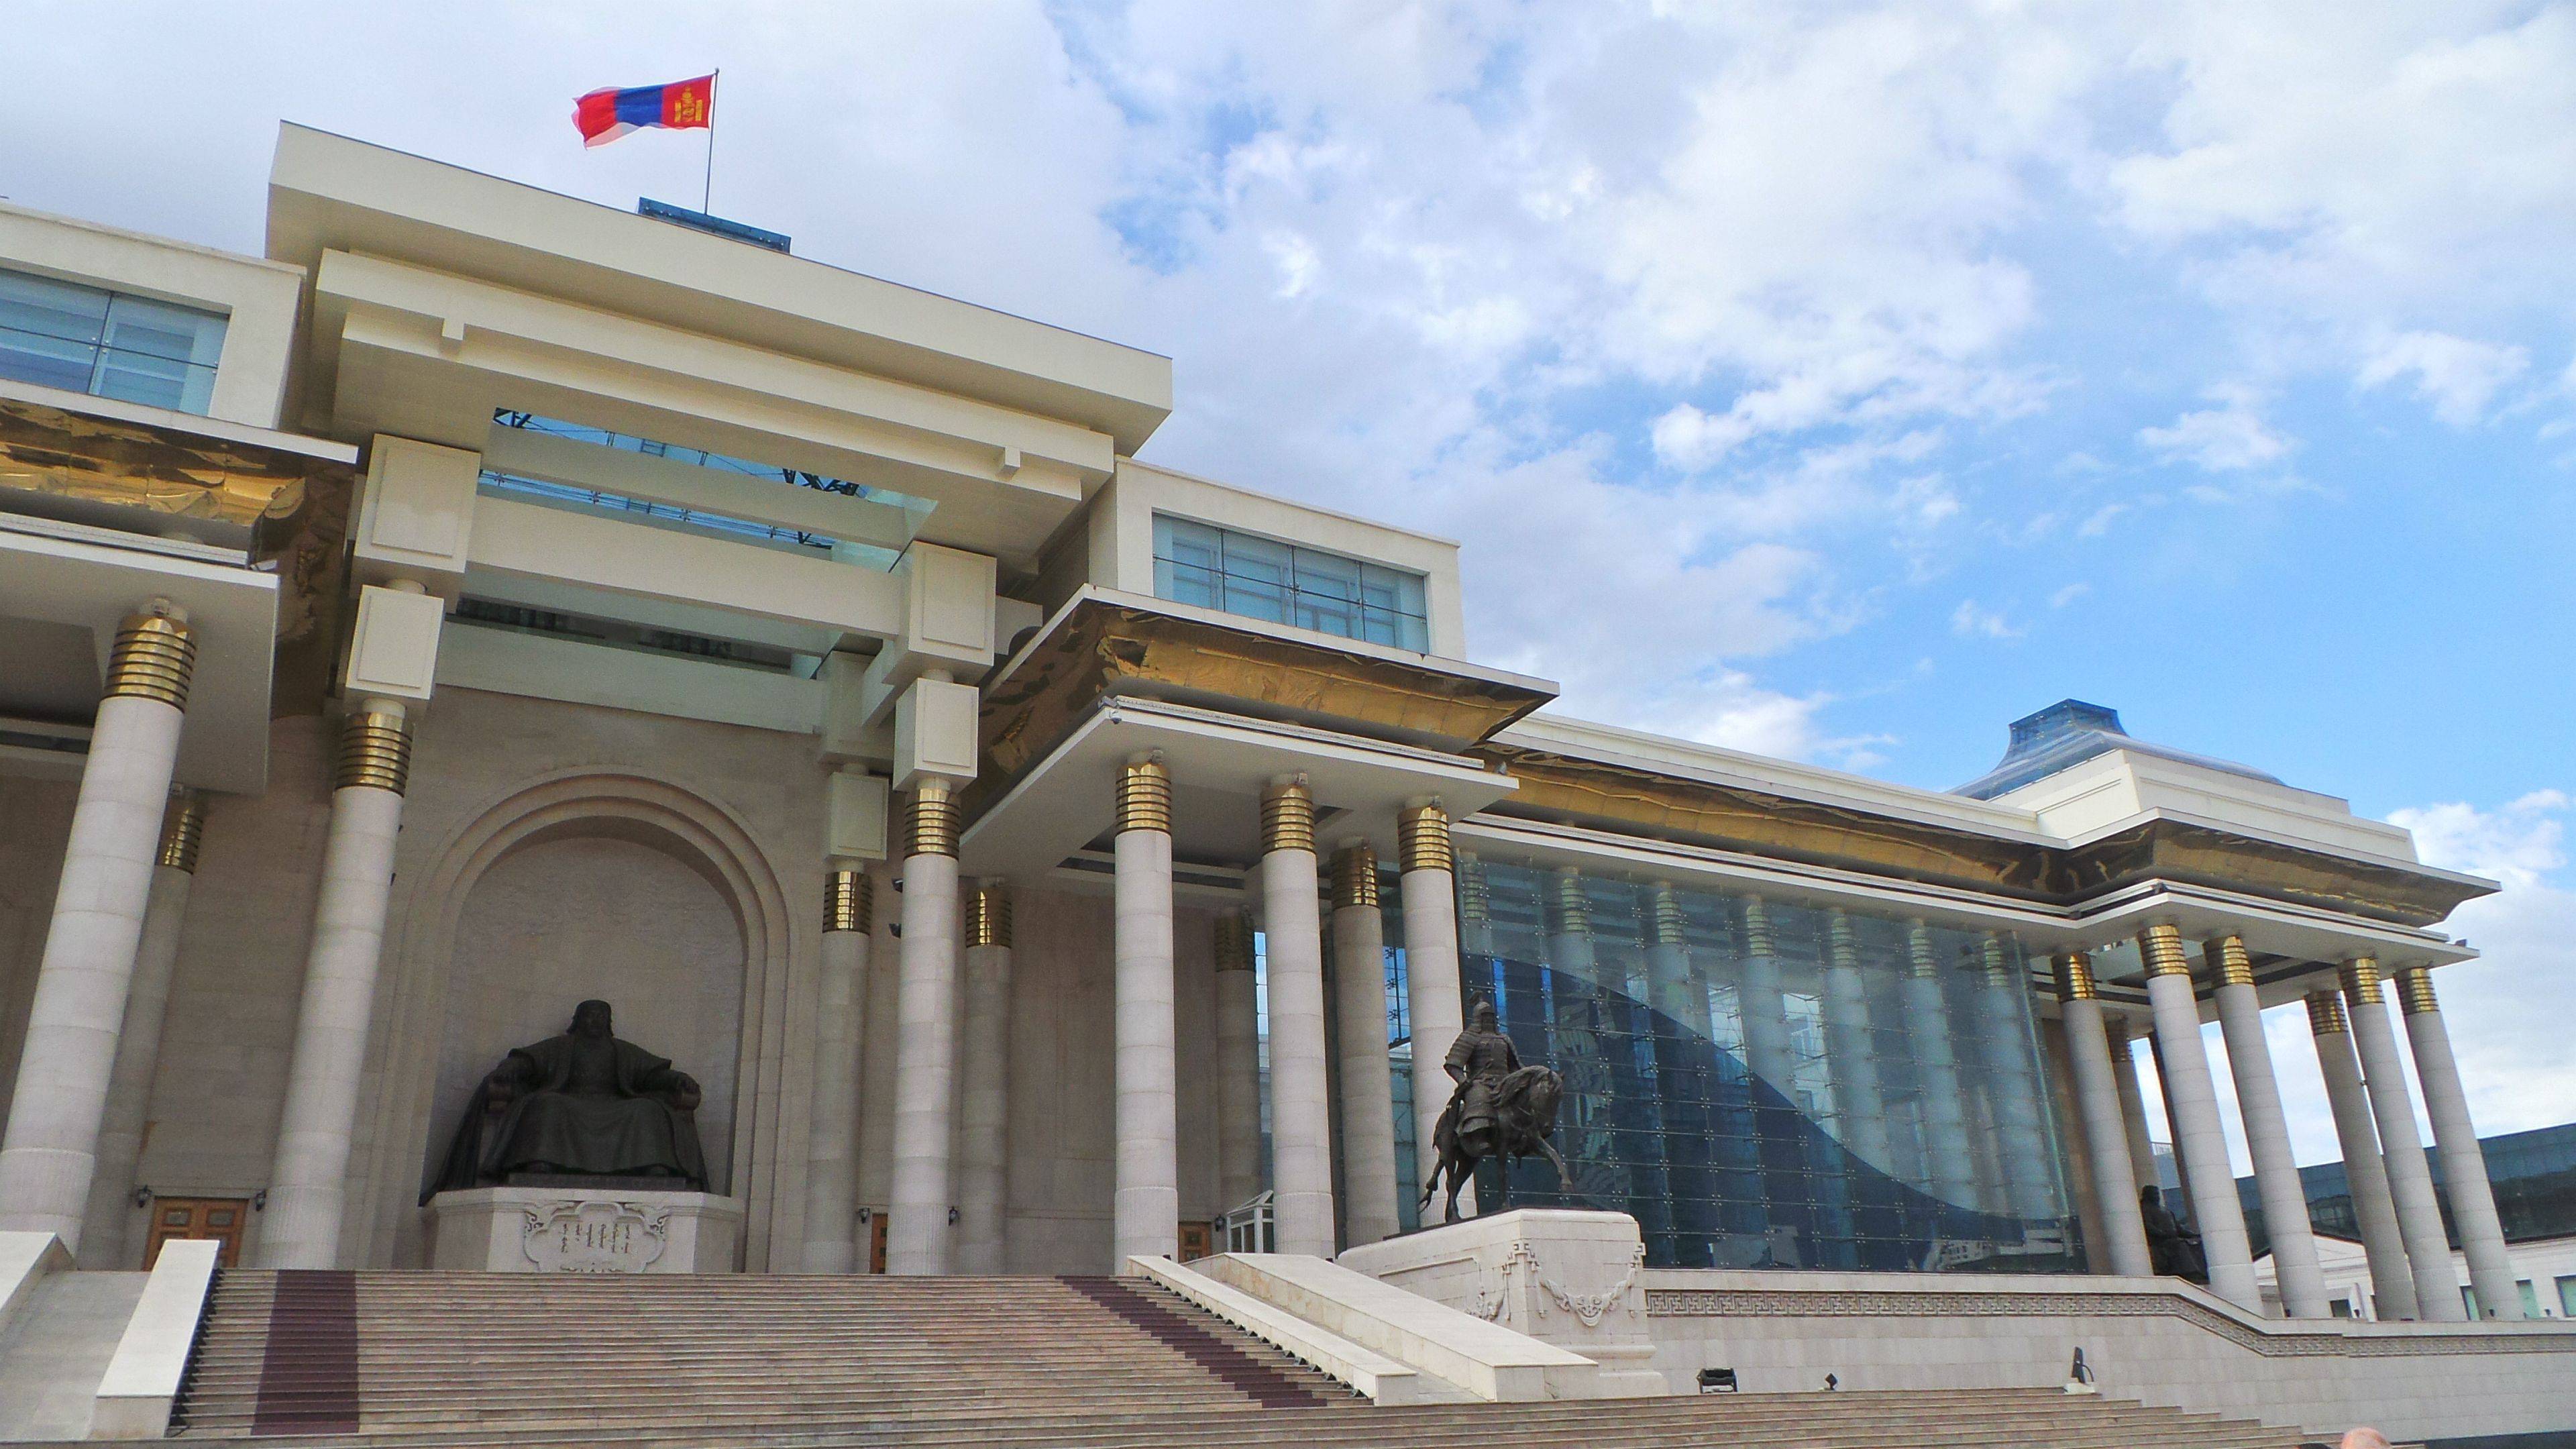 Bienvenue à Oulan Bator, capitale de la Mongolie